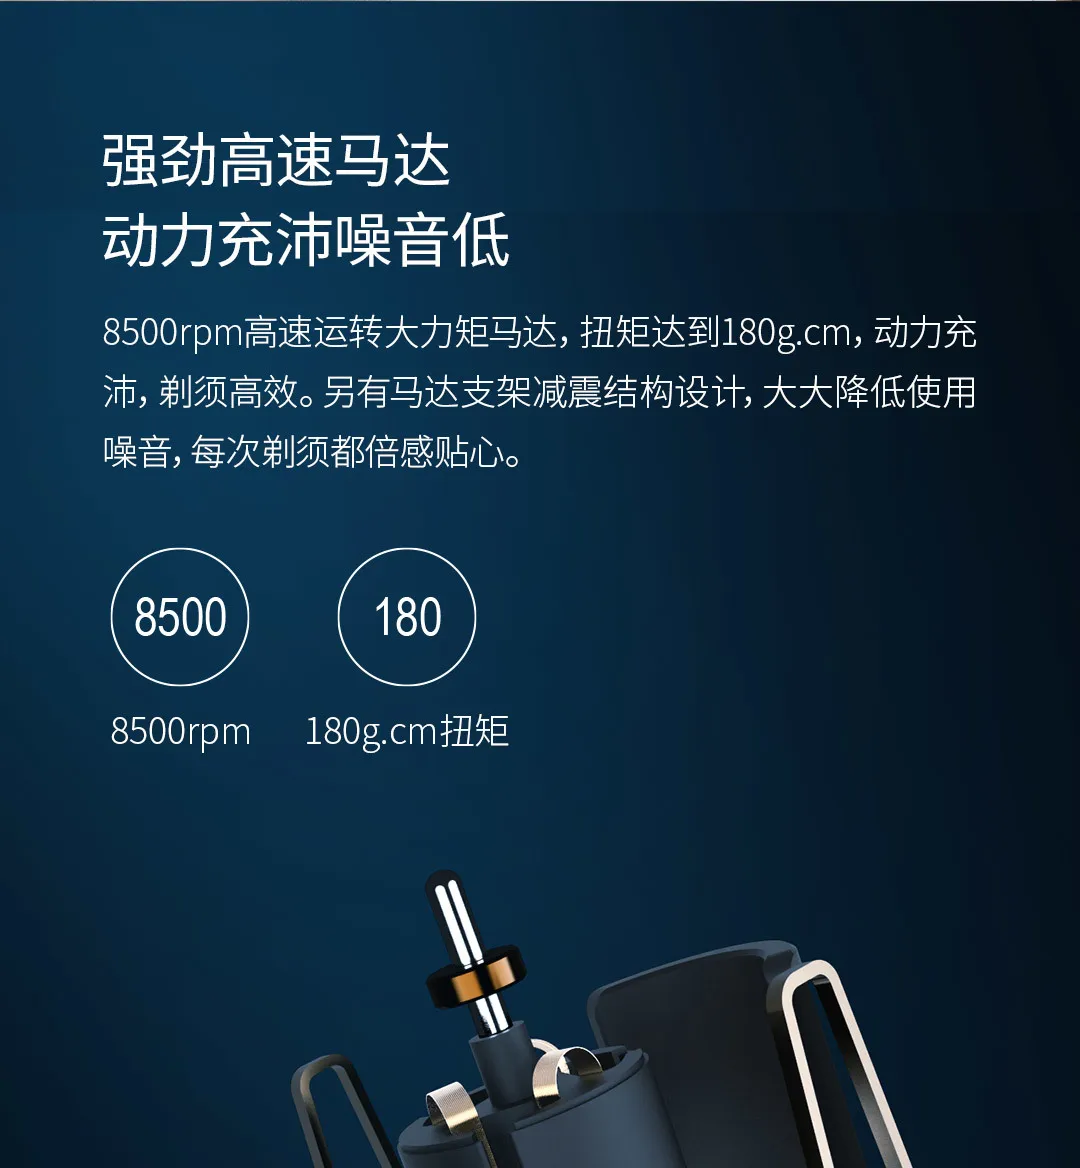 Xiaomi электробритва для мужчин Mijia бритва Водонепроницаемая влажная сухая бритва двойное кольцо лезвие USB перезаряжаемая бритва